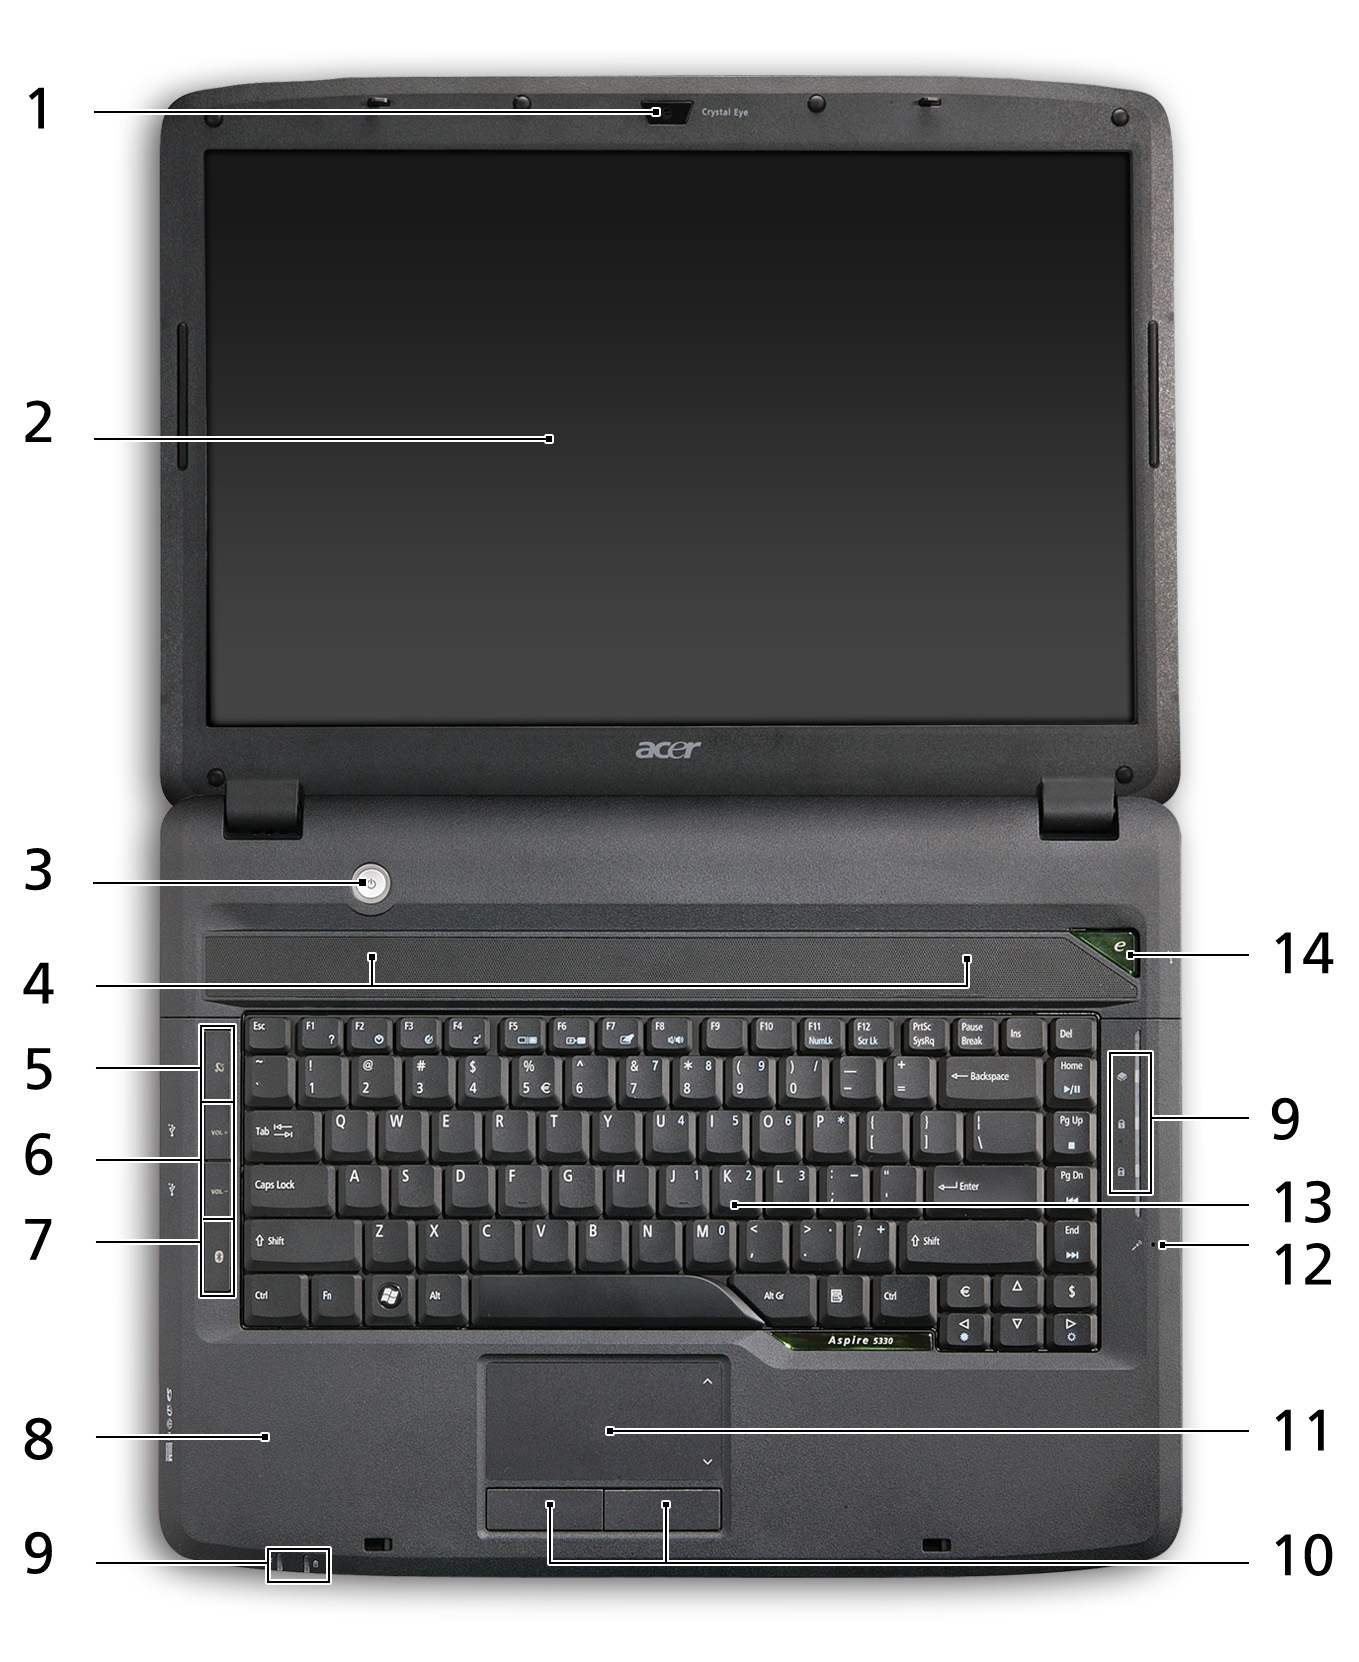 4 Μια ξενάγηση του φορητού υπολογιστή Acer Μετά από την εγκατάσταση του υπολογιστή όπως απεικονίζεται στην